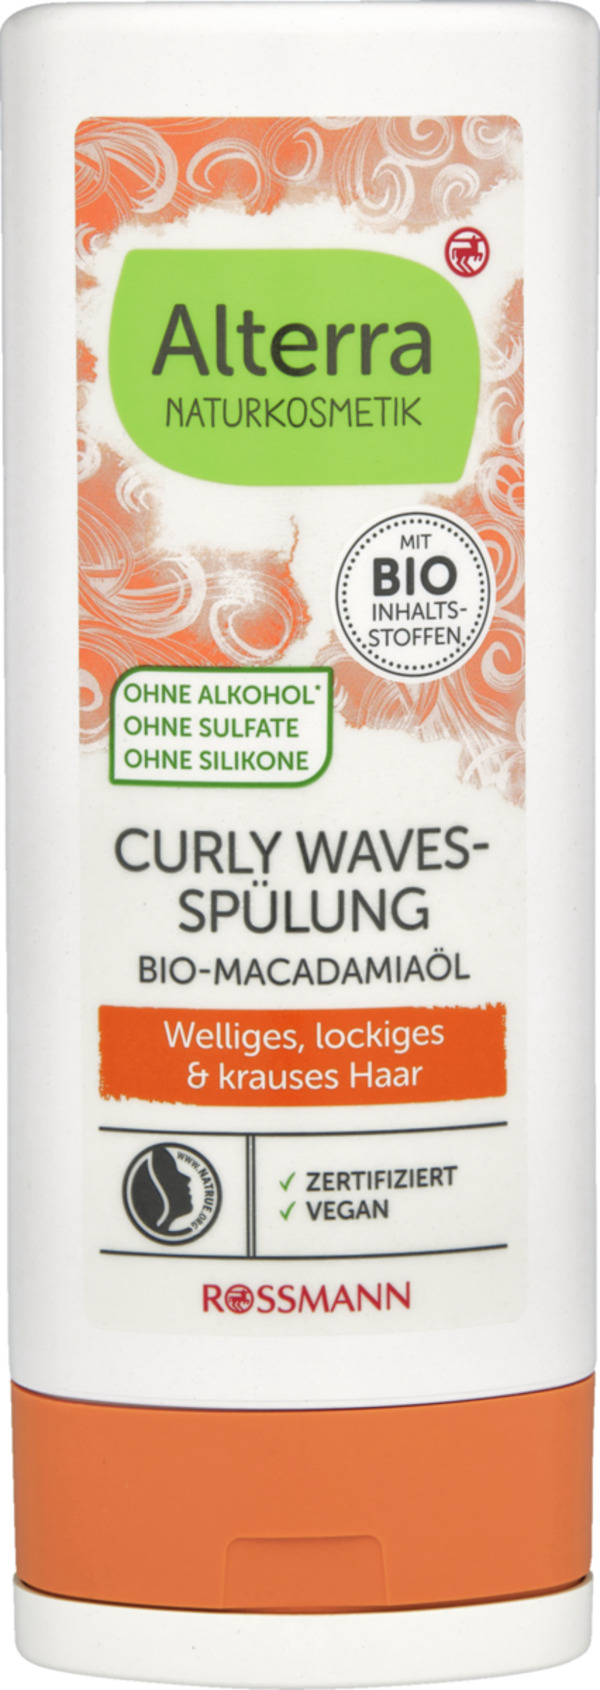 Bild 1 von Alterra NATURKOSMETIK Curly Waves-Spülung Bio-Macadamiaöl